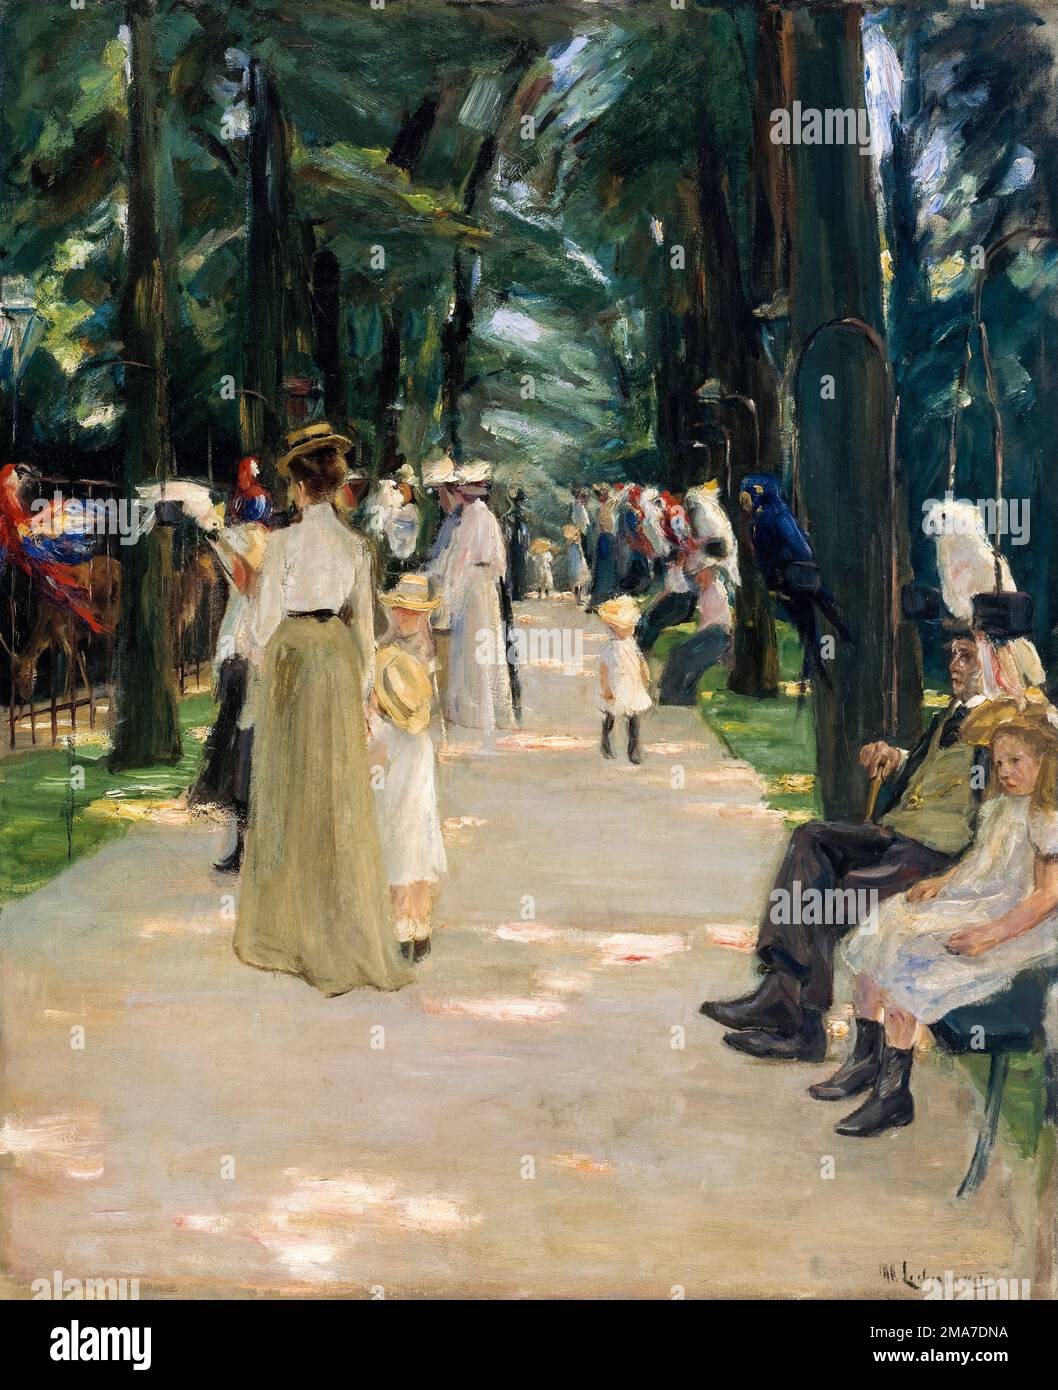 Max Liebermann, boulevard des perroquets, (Parrot Alley), peinture à l'huile sur toile, 1902 Banque D'Images